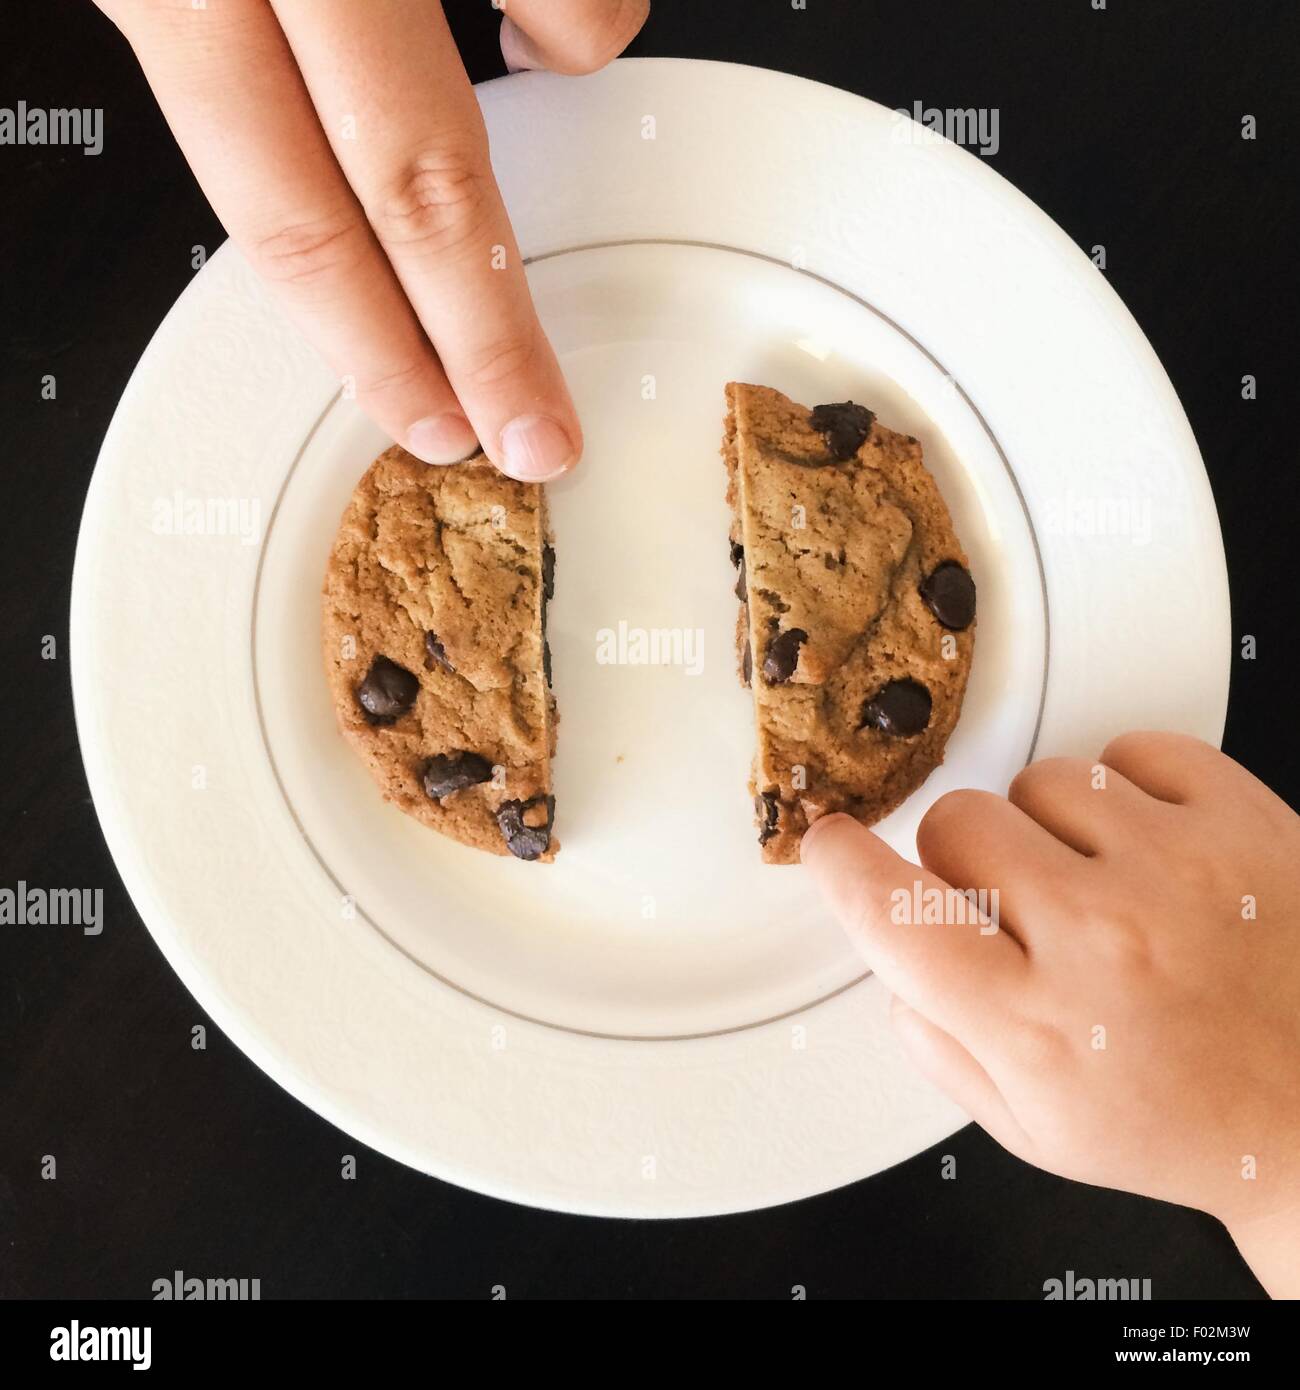 Deux personnes partageant un biscuit aux brisures de chocolat Banque D'Images